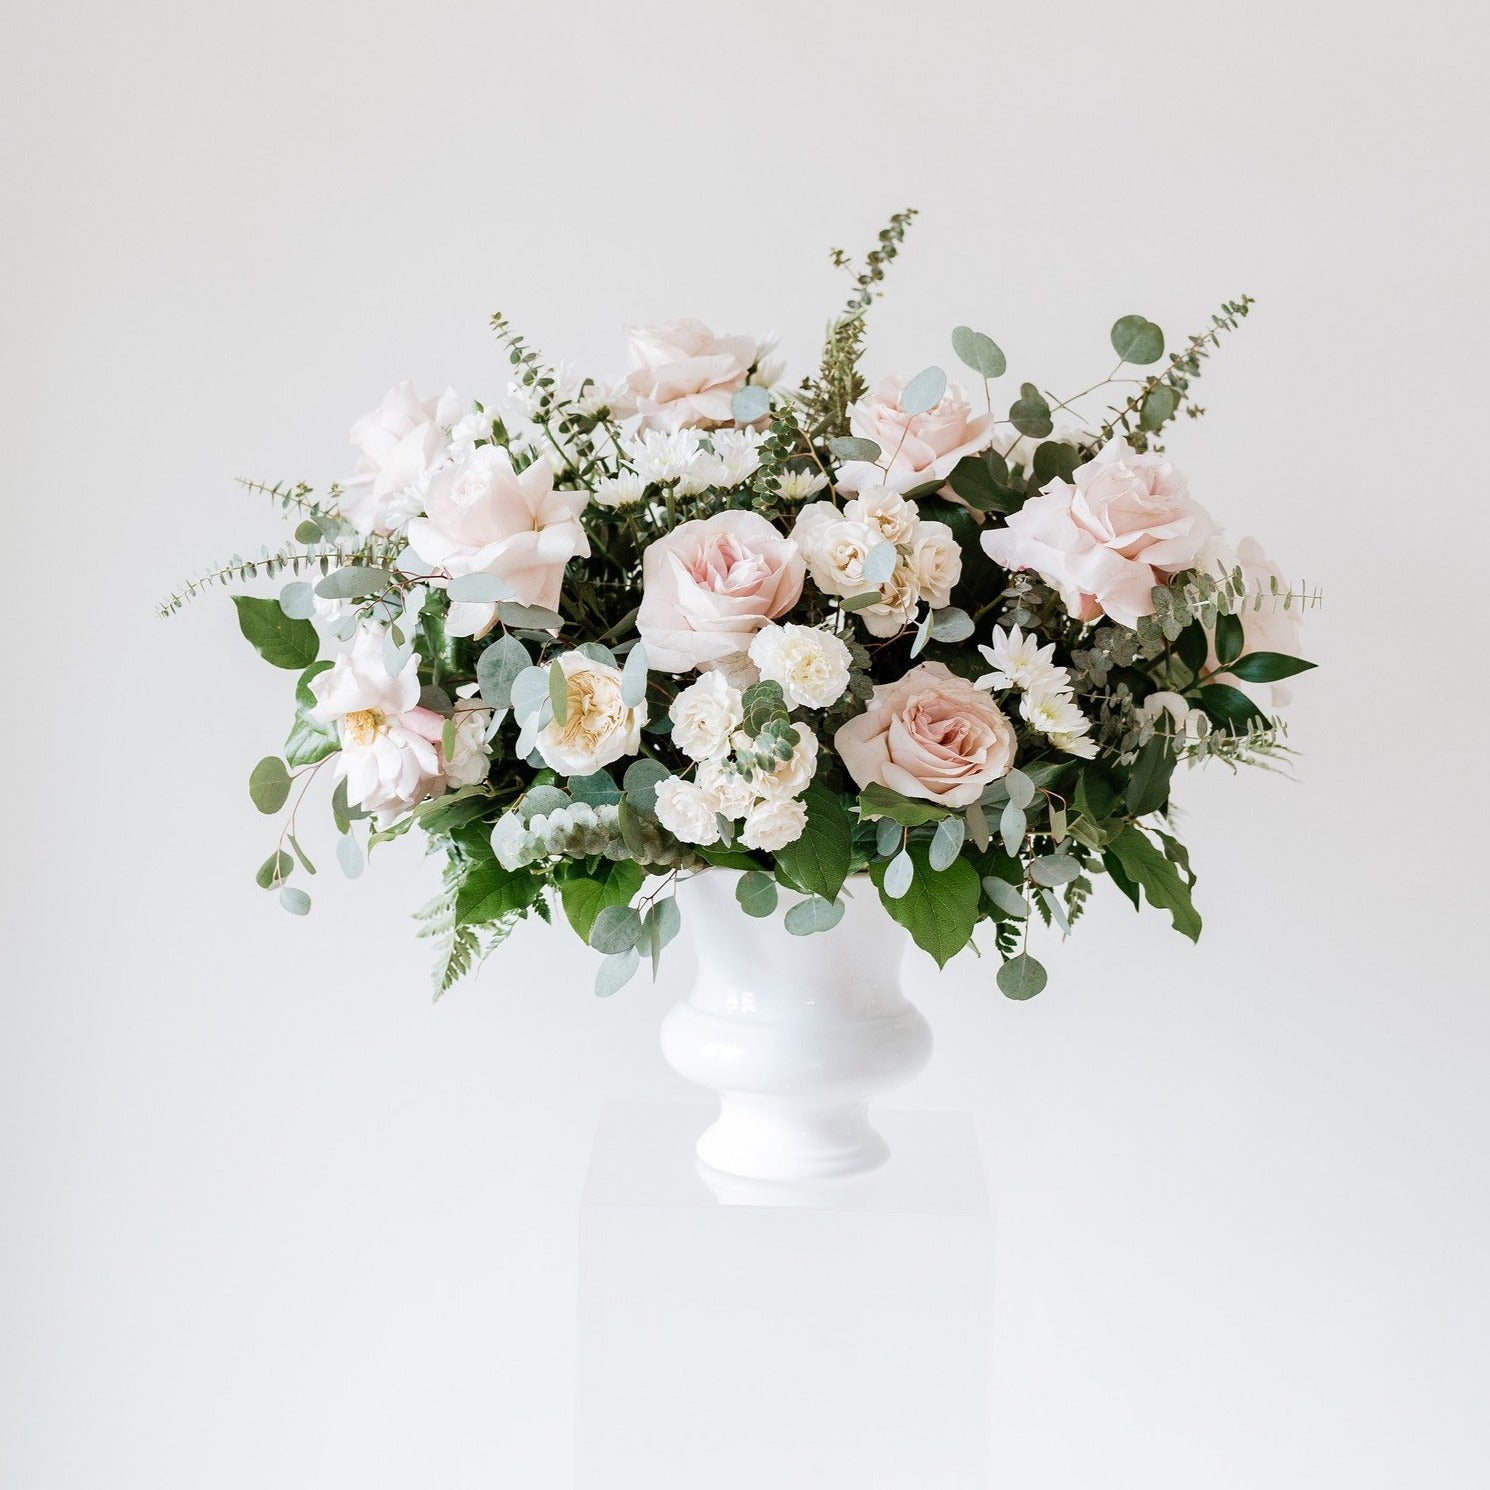 Dusty Rose & Cream Wedding Flower Moodboard